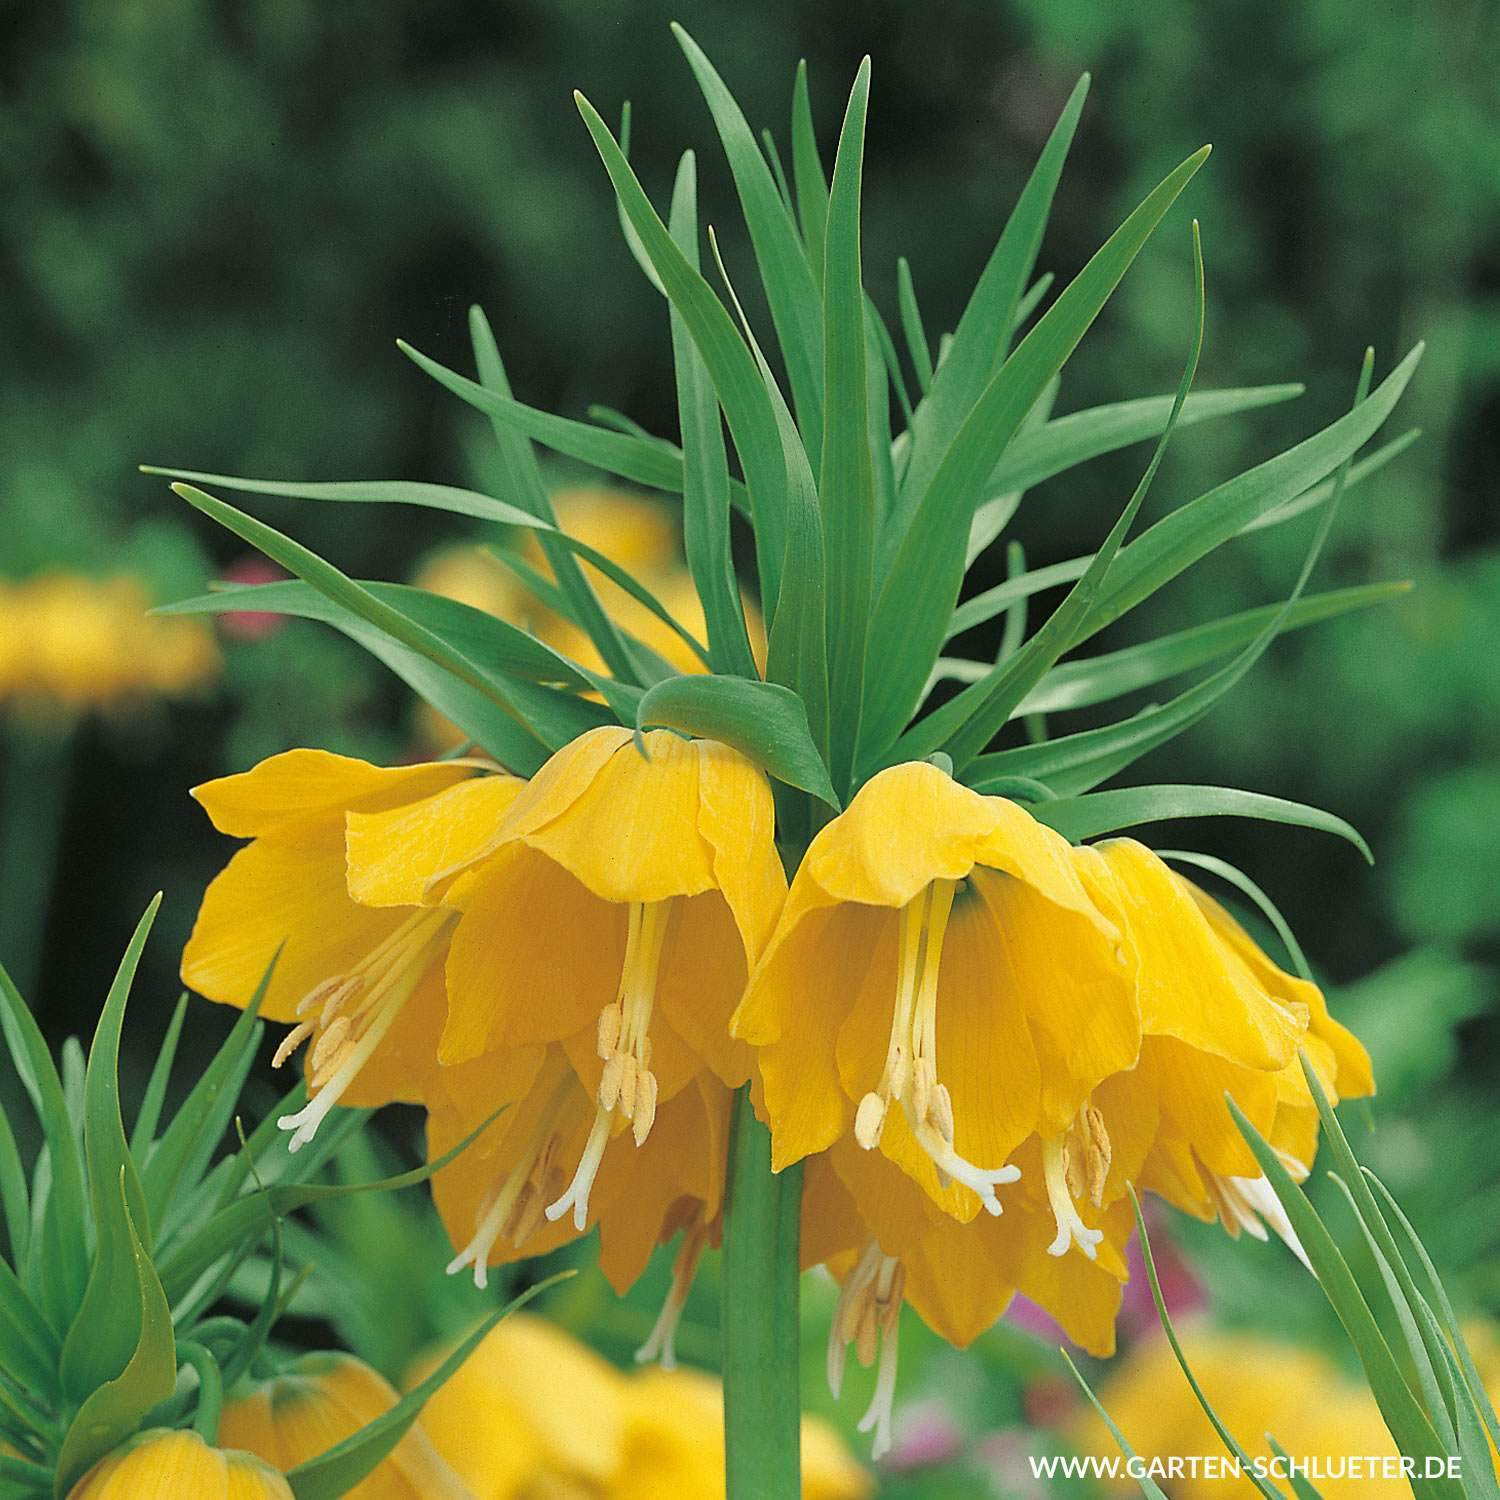 garten ringelblume das beste von kaiserkrone lutea gelb 1 stuck fritillaria imperialis lutea gelb of garten ringelblume